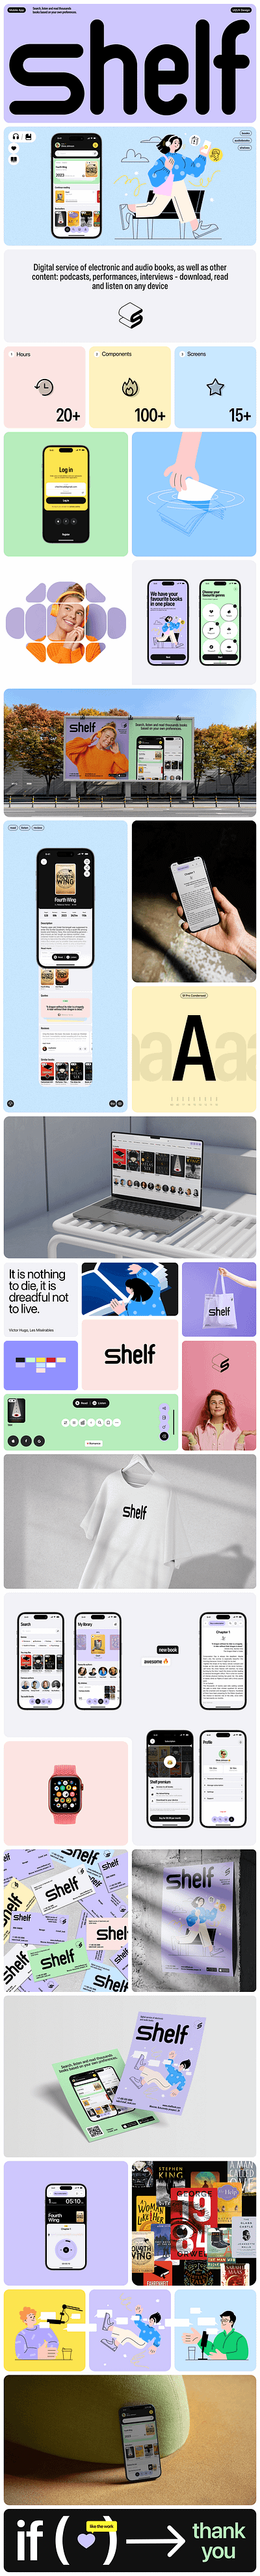 Shelf animation design ui ux web